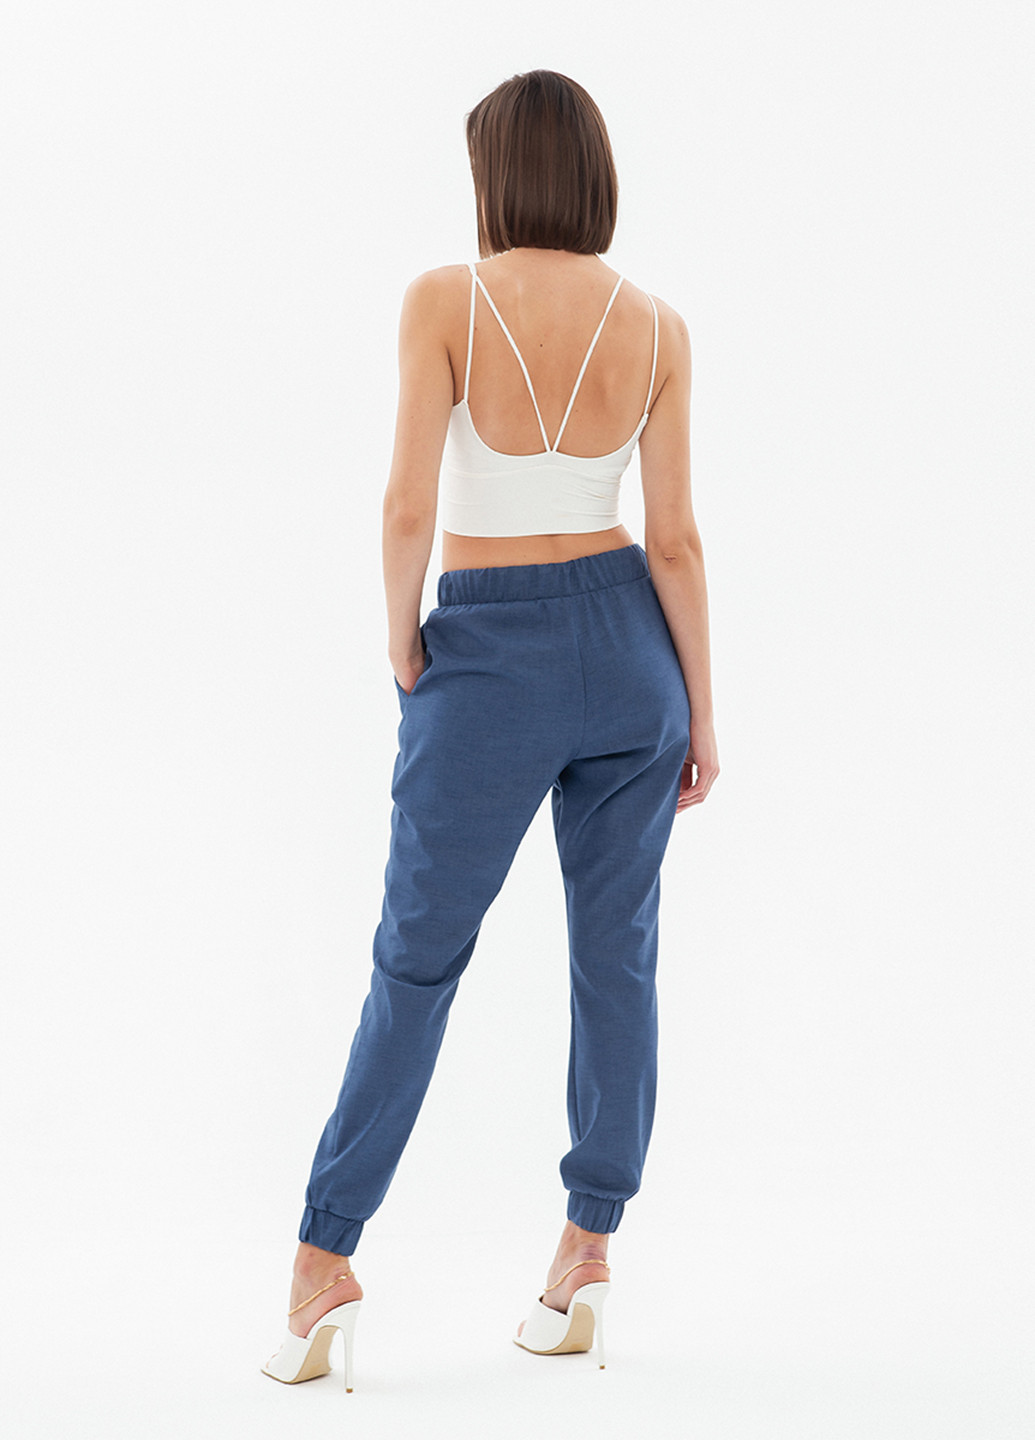 Жакет (брюки, брюки) BGL Комплект (блейзер и брюки) брючный однотонный синий деловой костюмная, хлопок